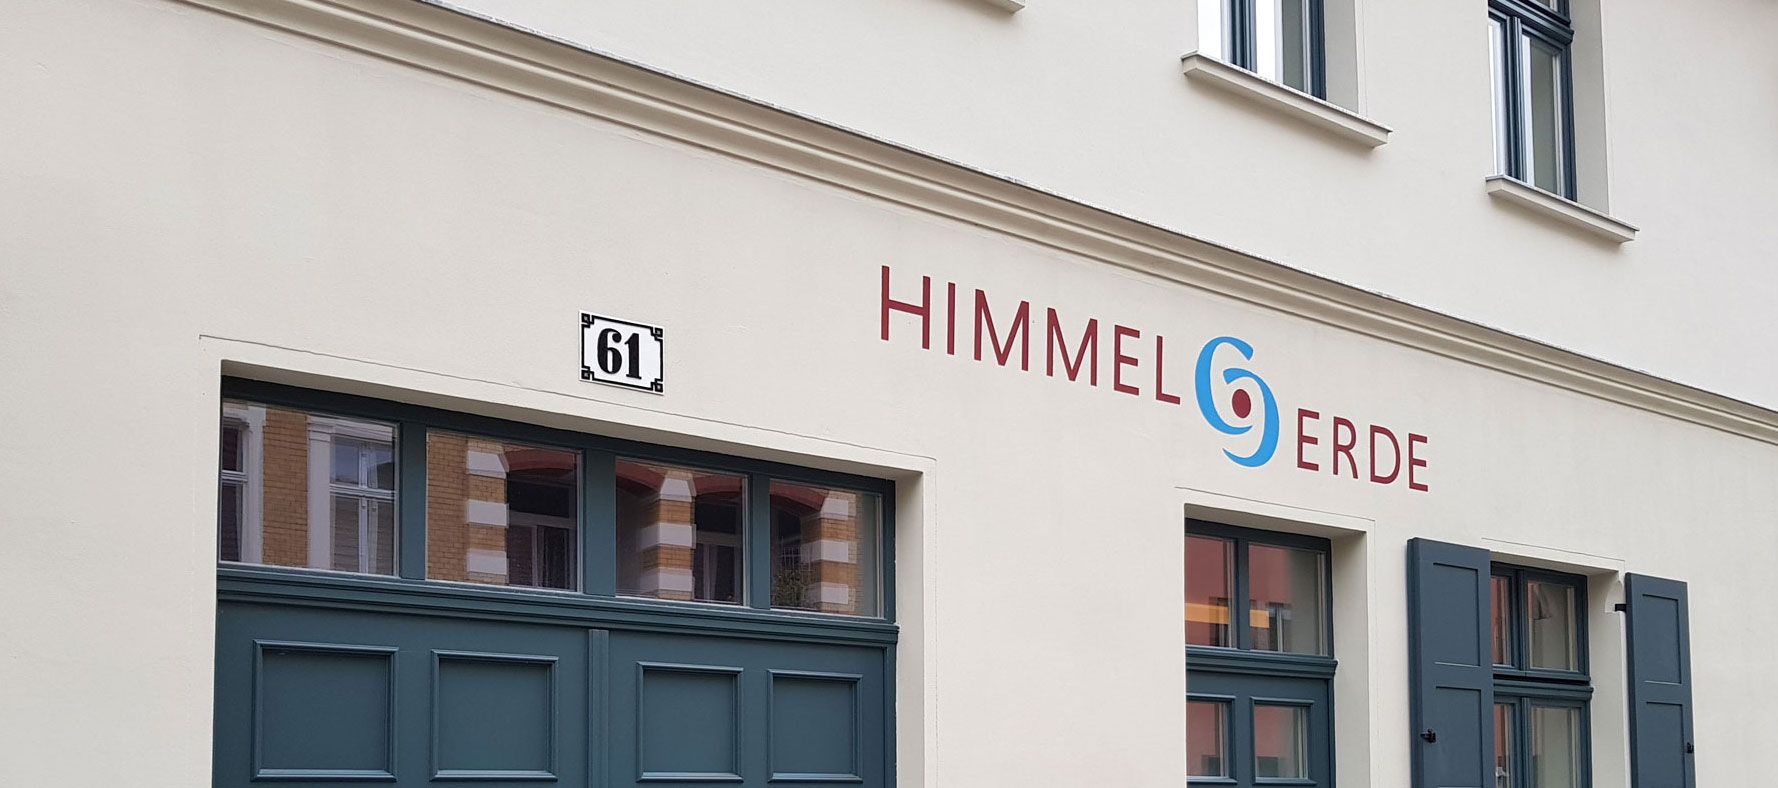 Fassade des Café Himmel & Erde in Brandenburg